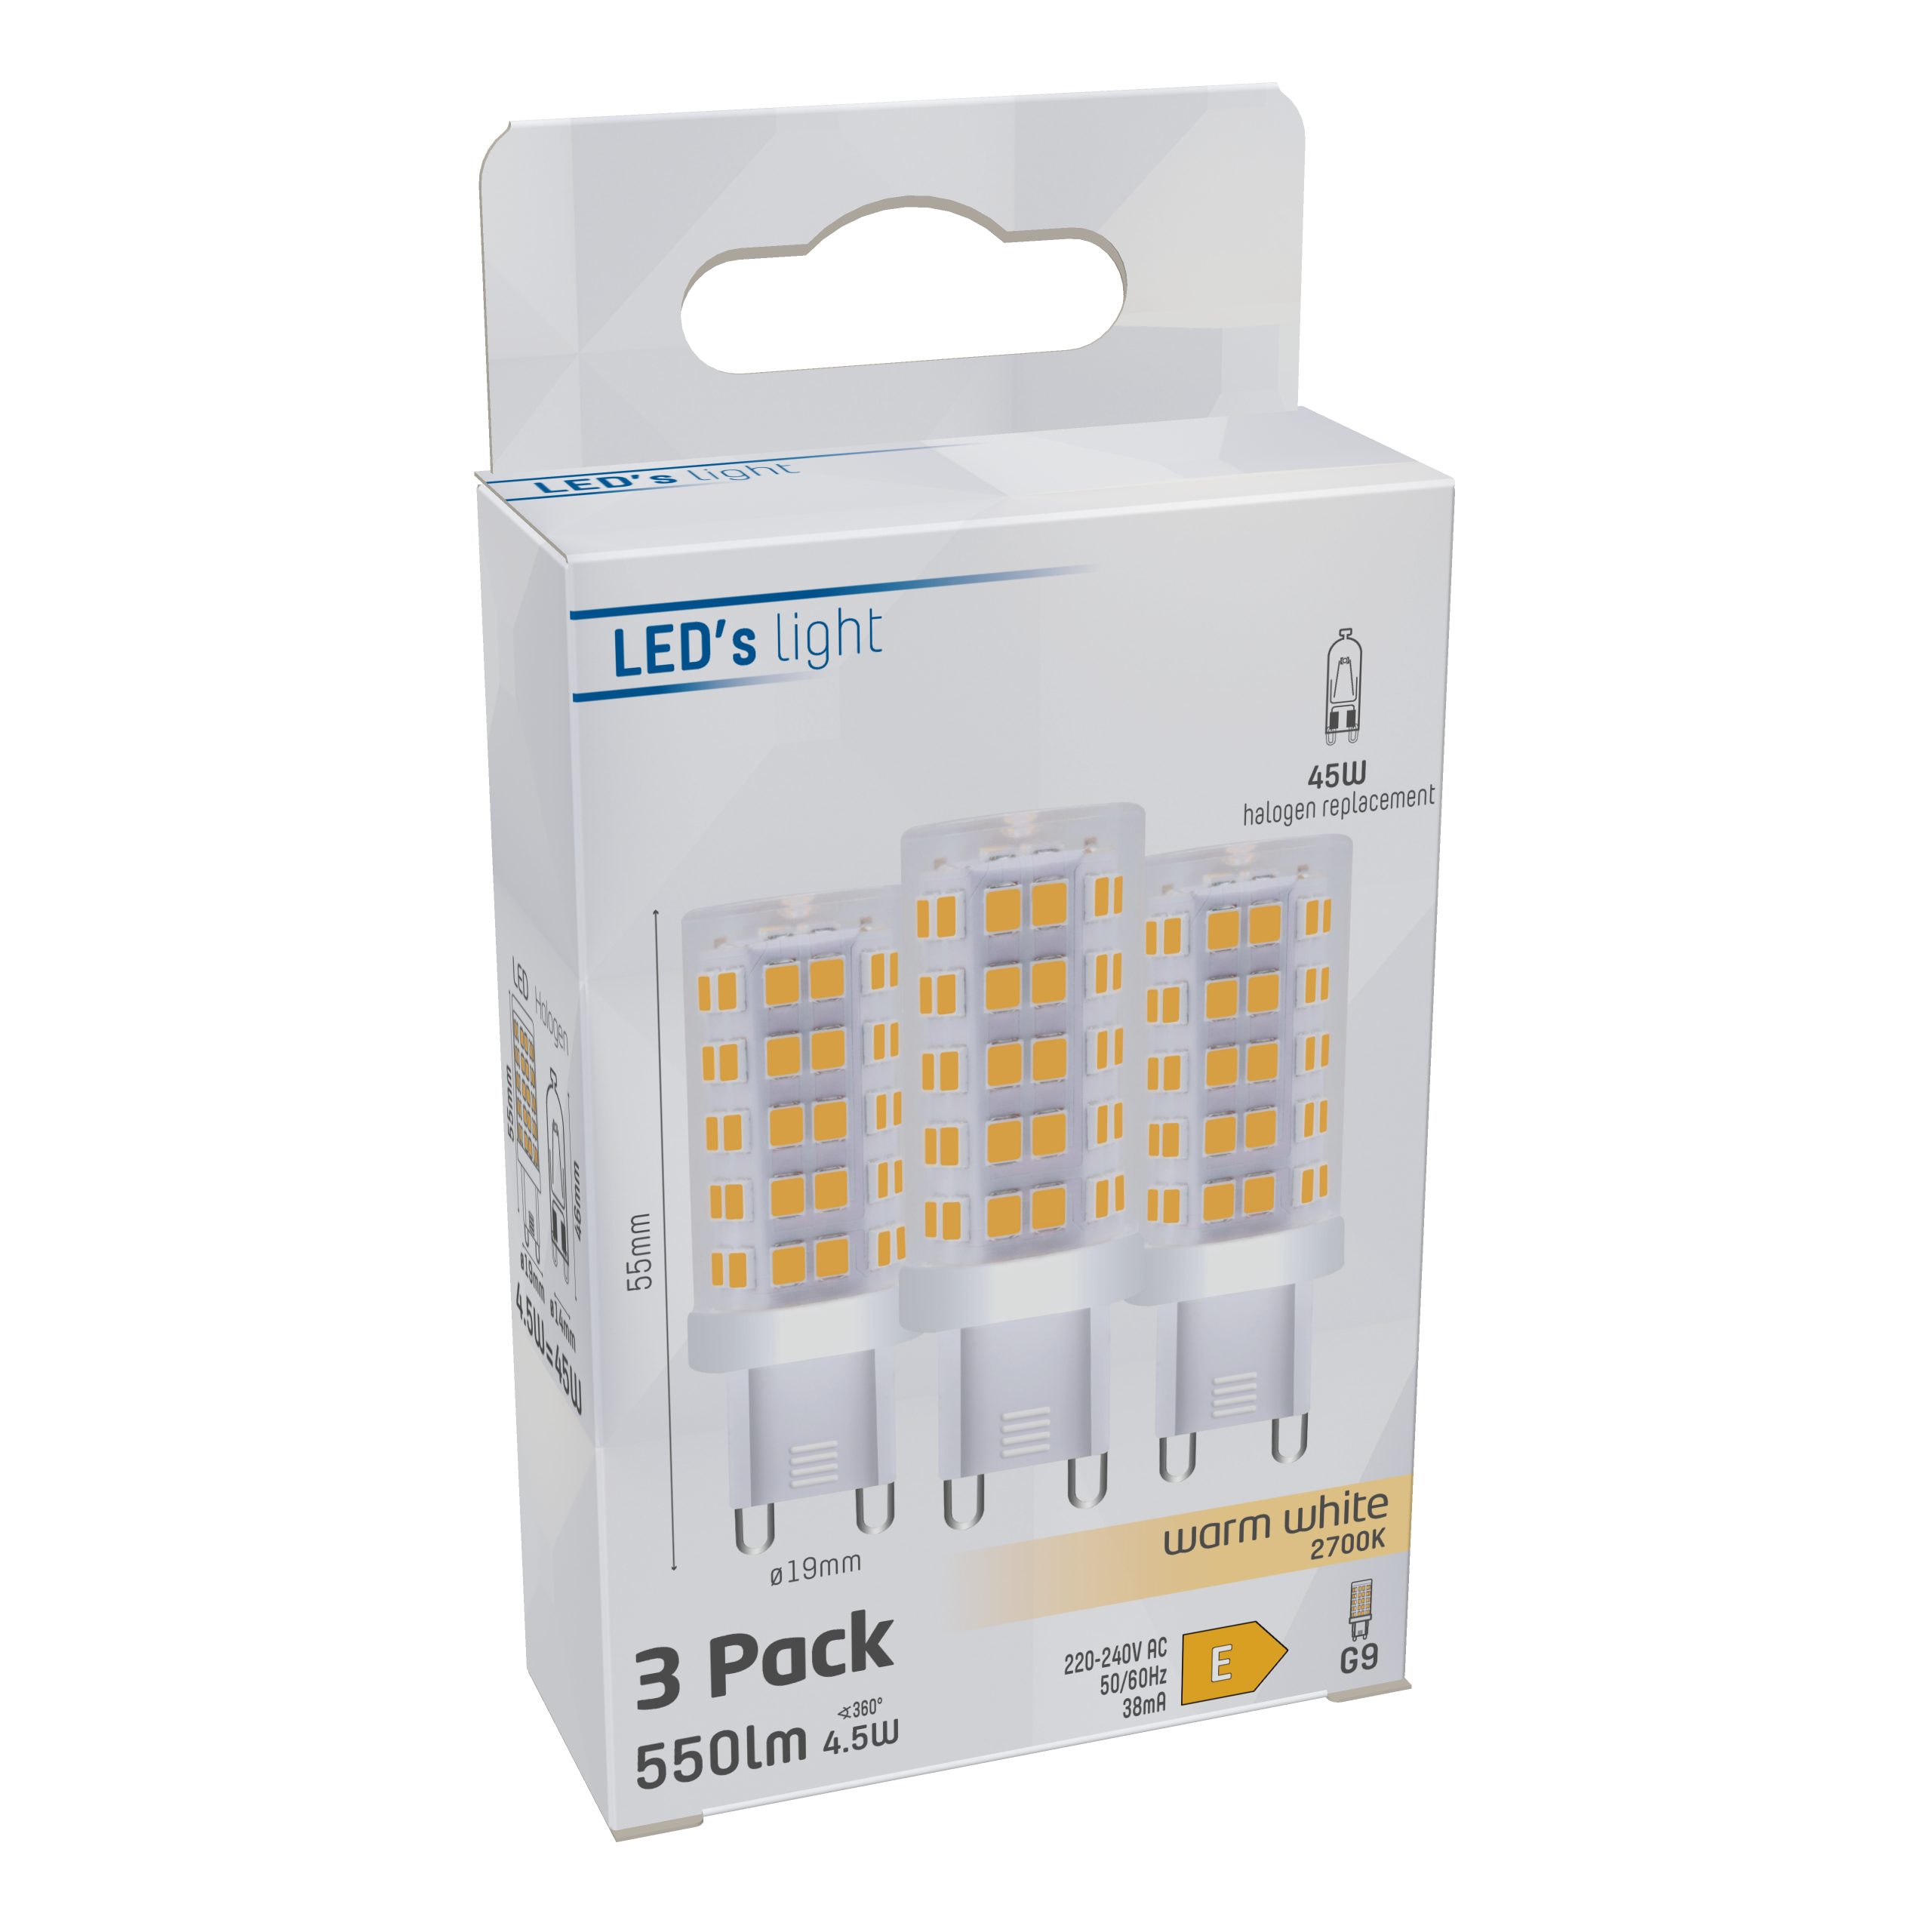 LED's light LED-Leuchtmittel 4.5W 0620136 Kapsel, warmweiß 3-Pack G9 G9, LED Klar